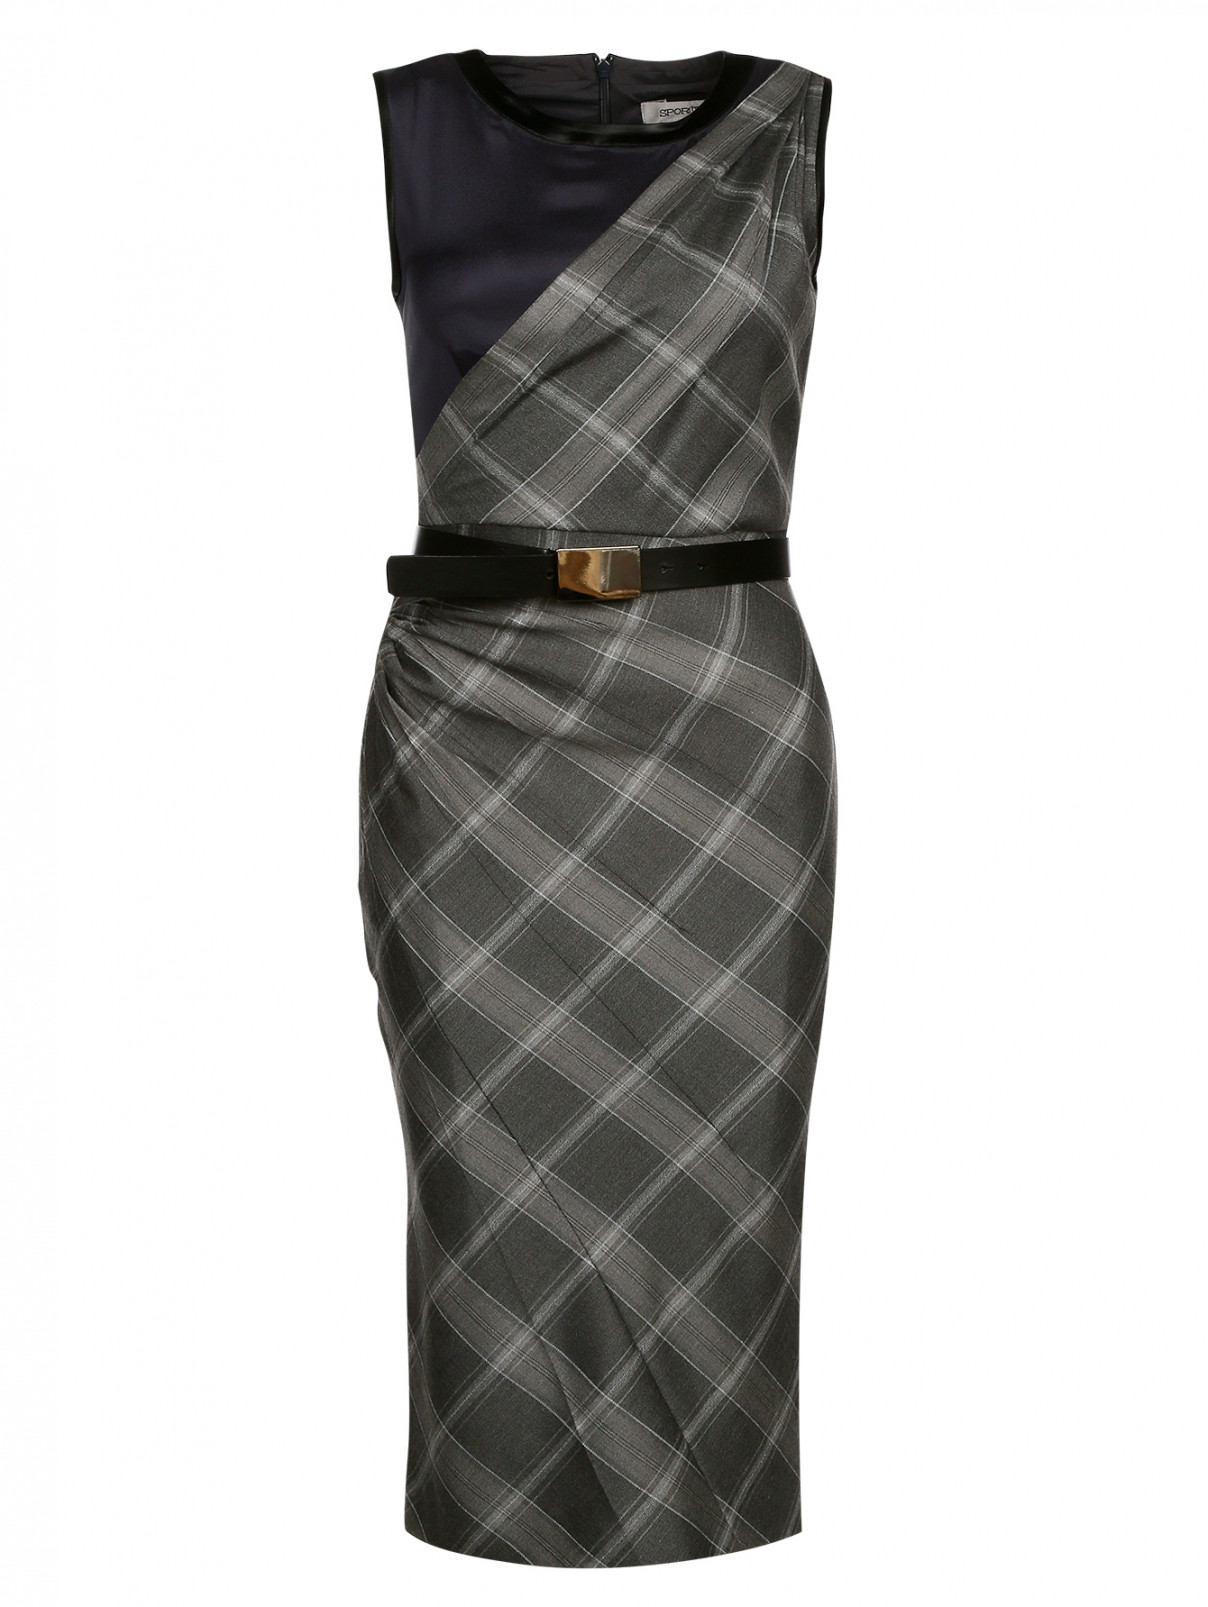 Платье-футляр с принтом "клетка" Sportmax  –  Общий вид  – Цвет:  Серый